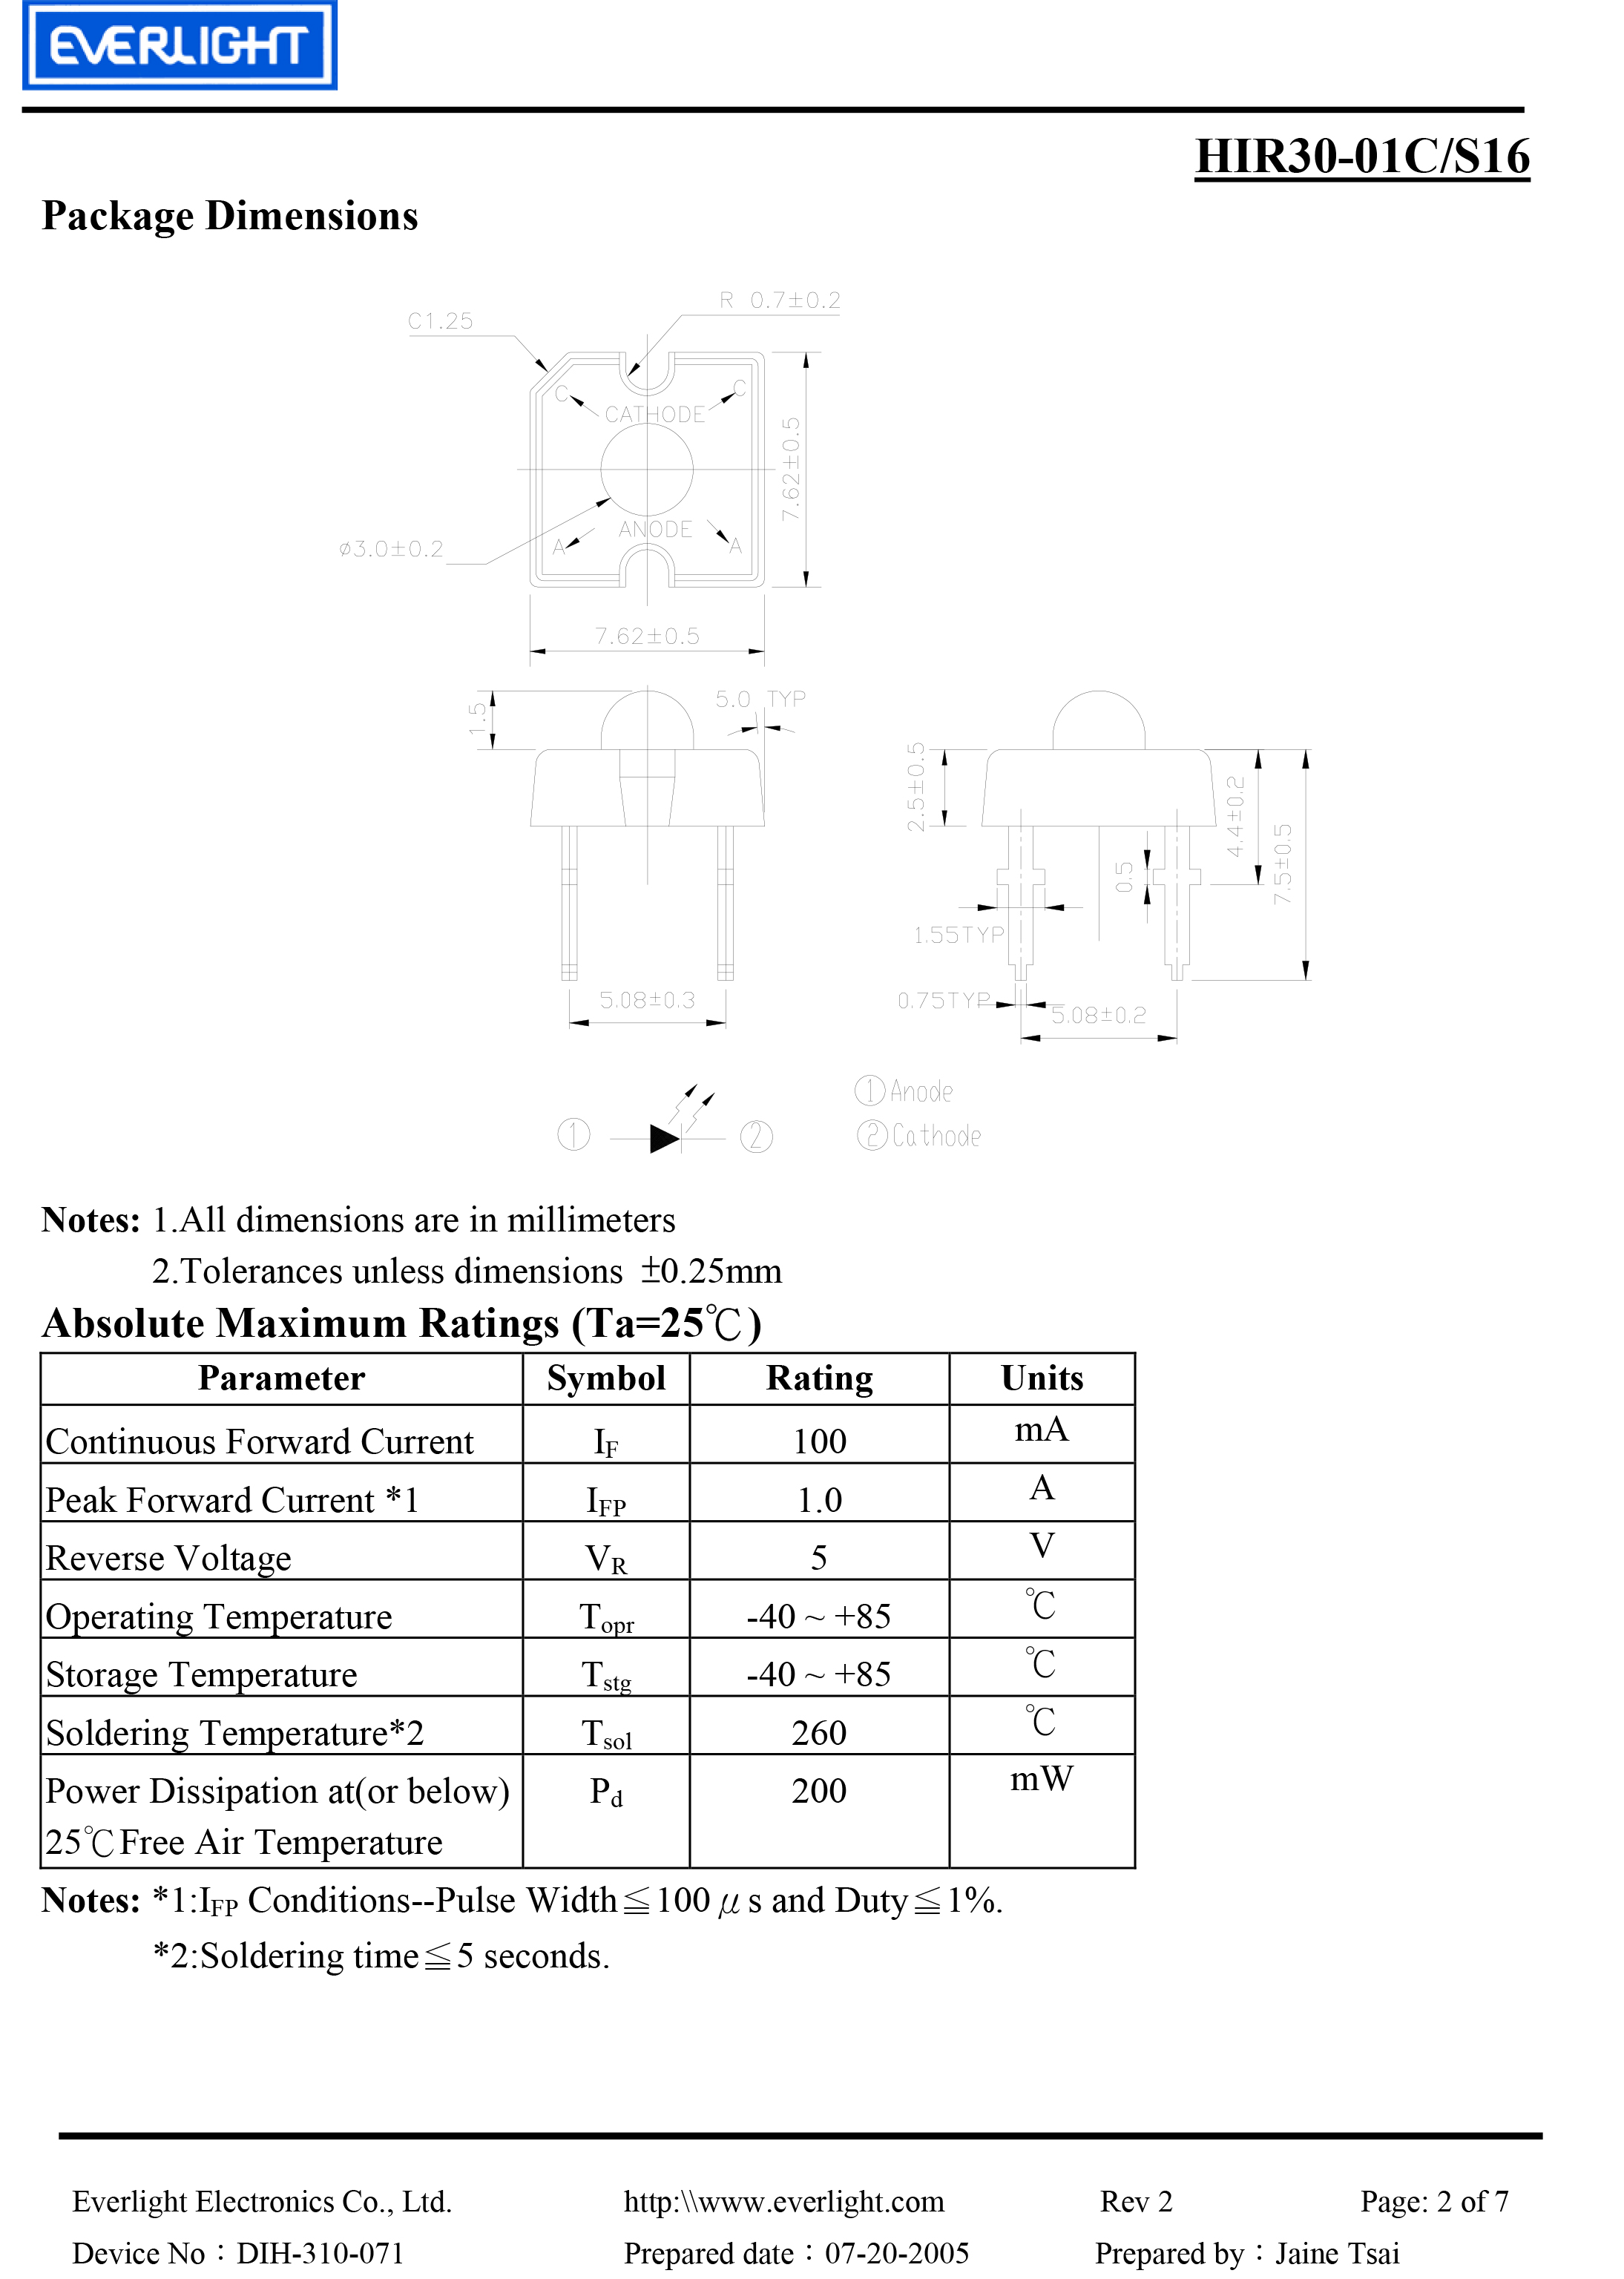 亿光直插食人鱼红外发射管HIR30-01C/S16规格书PDF